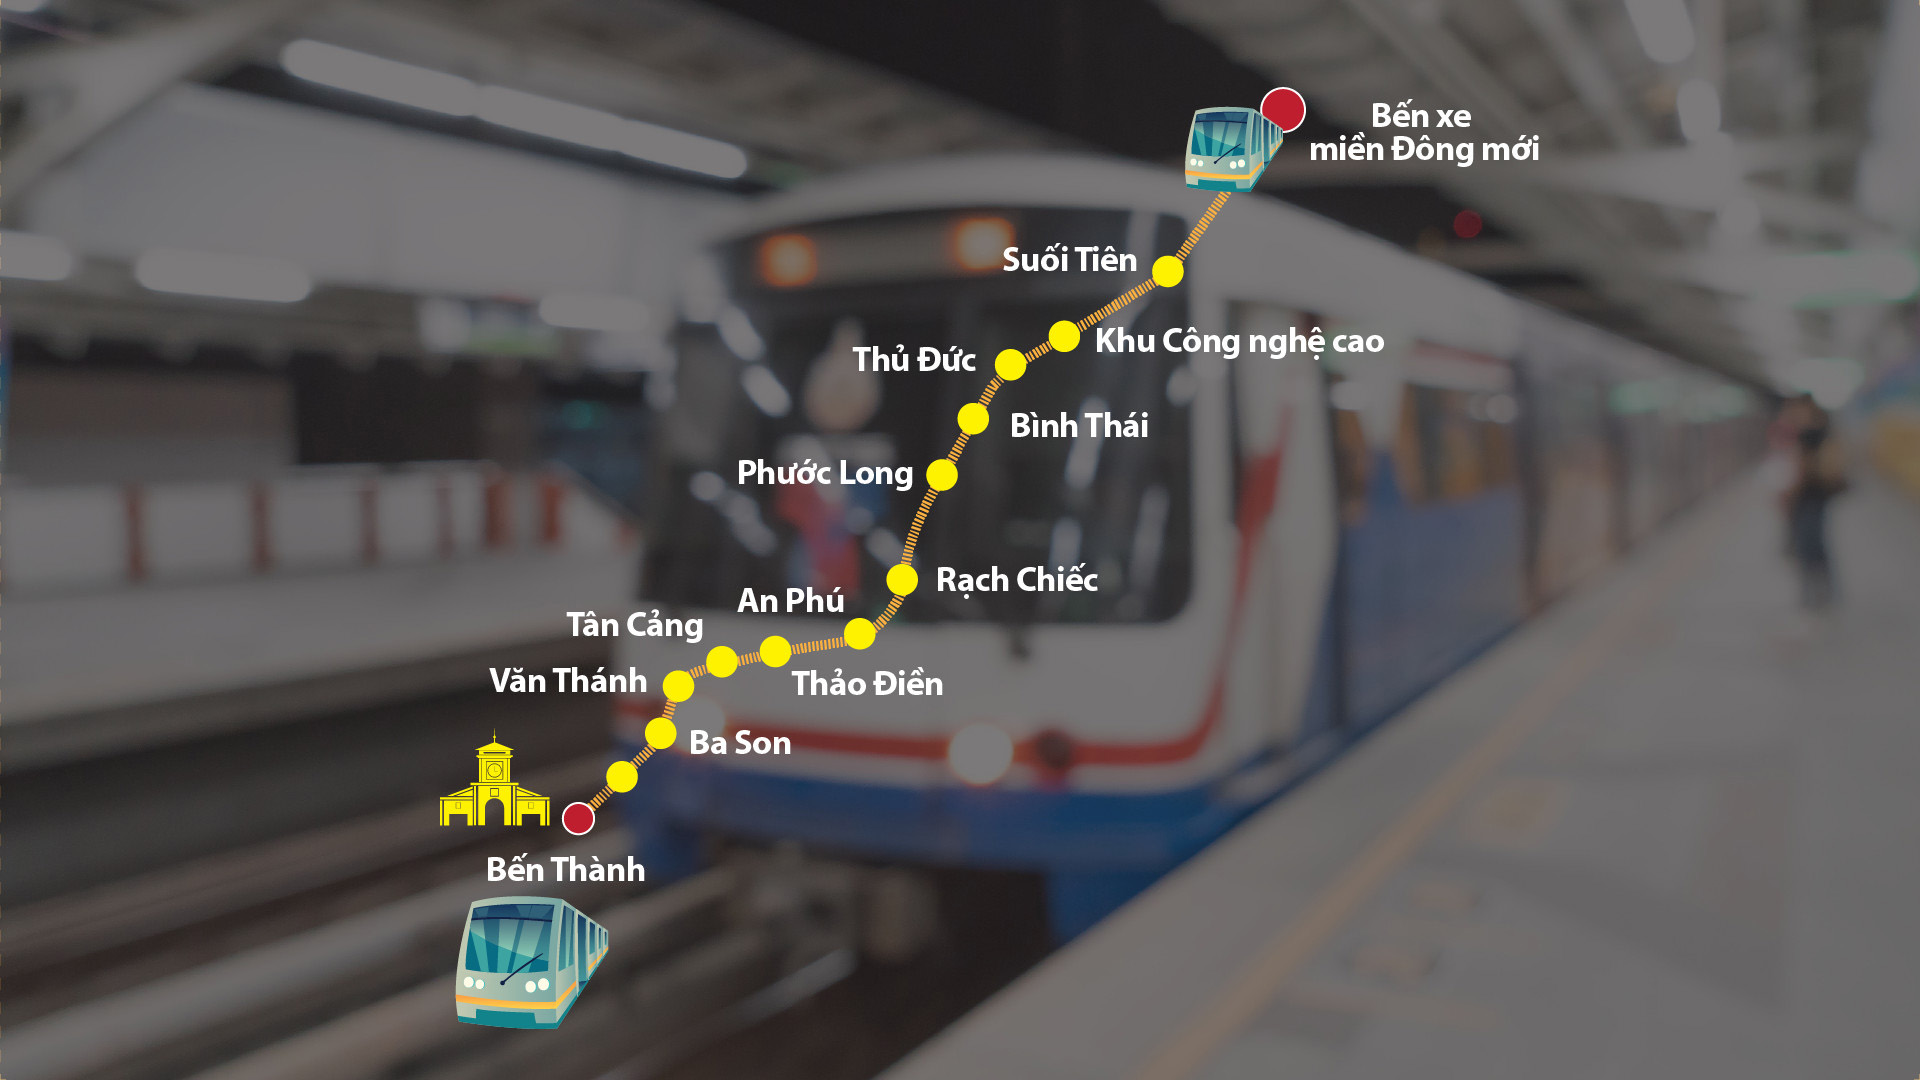 Tuyen Metro so 1 tu Ben Thanh den Suoi Tien